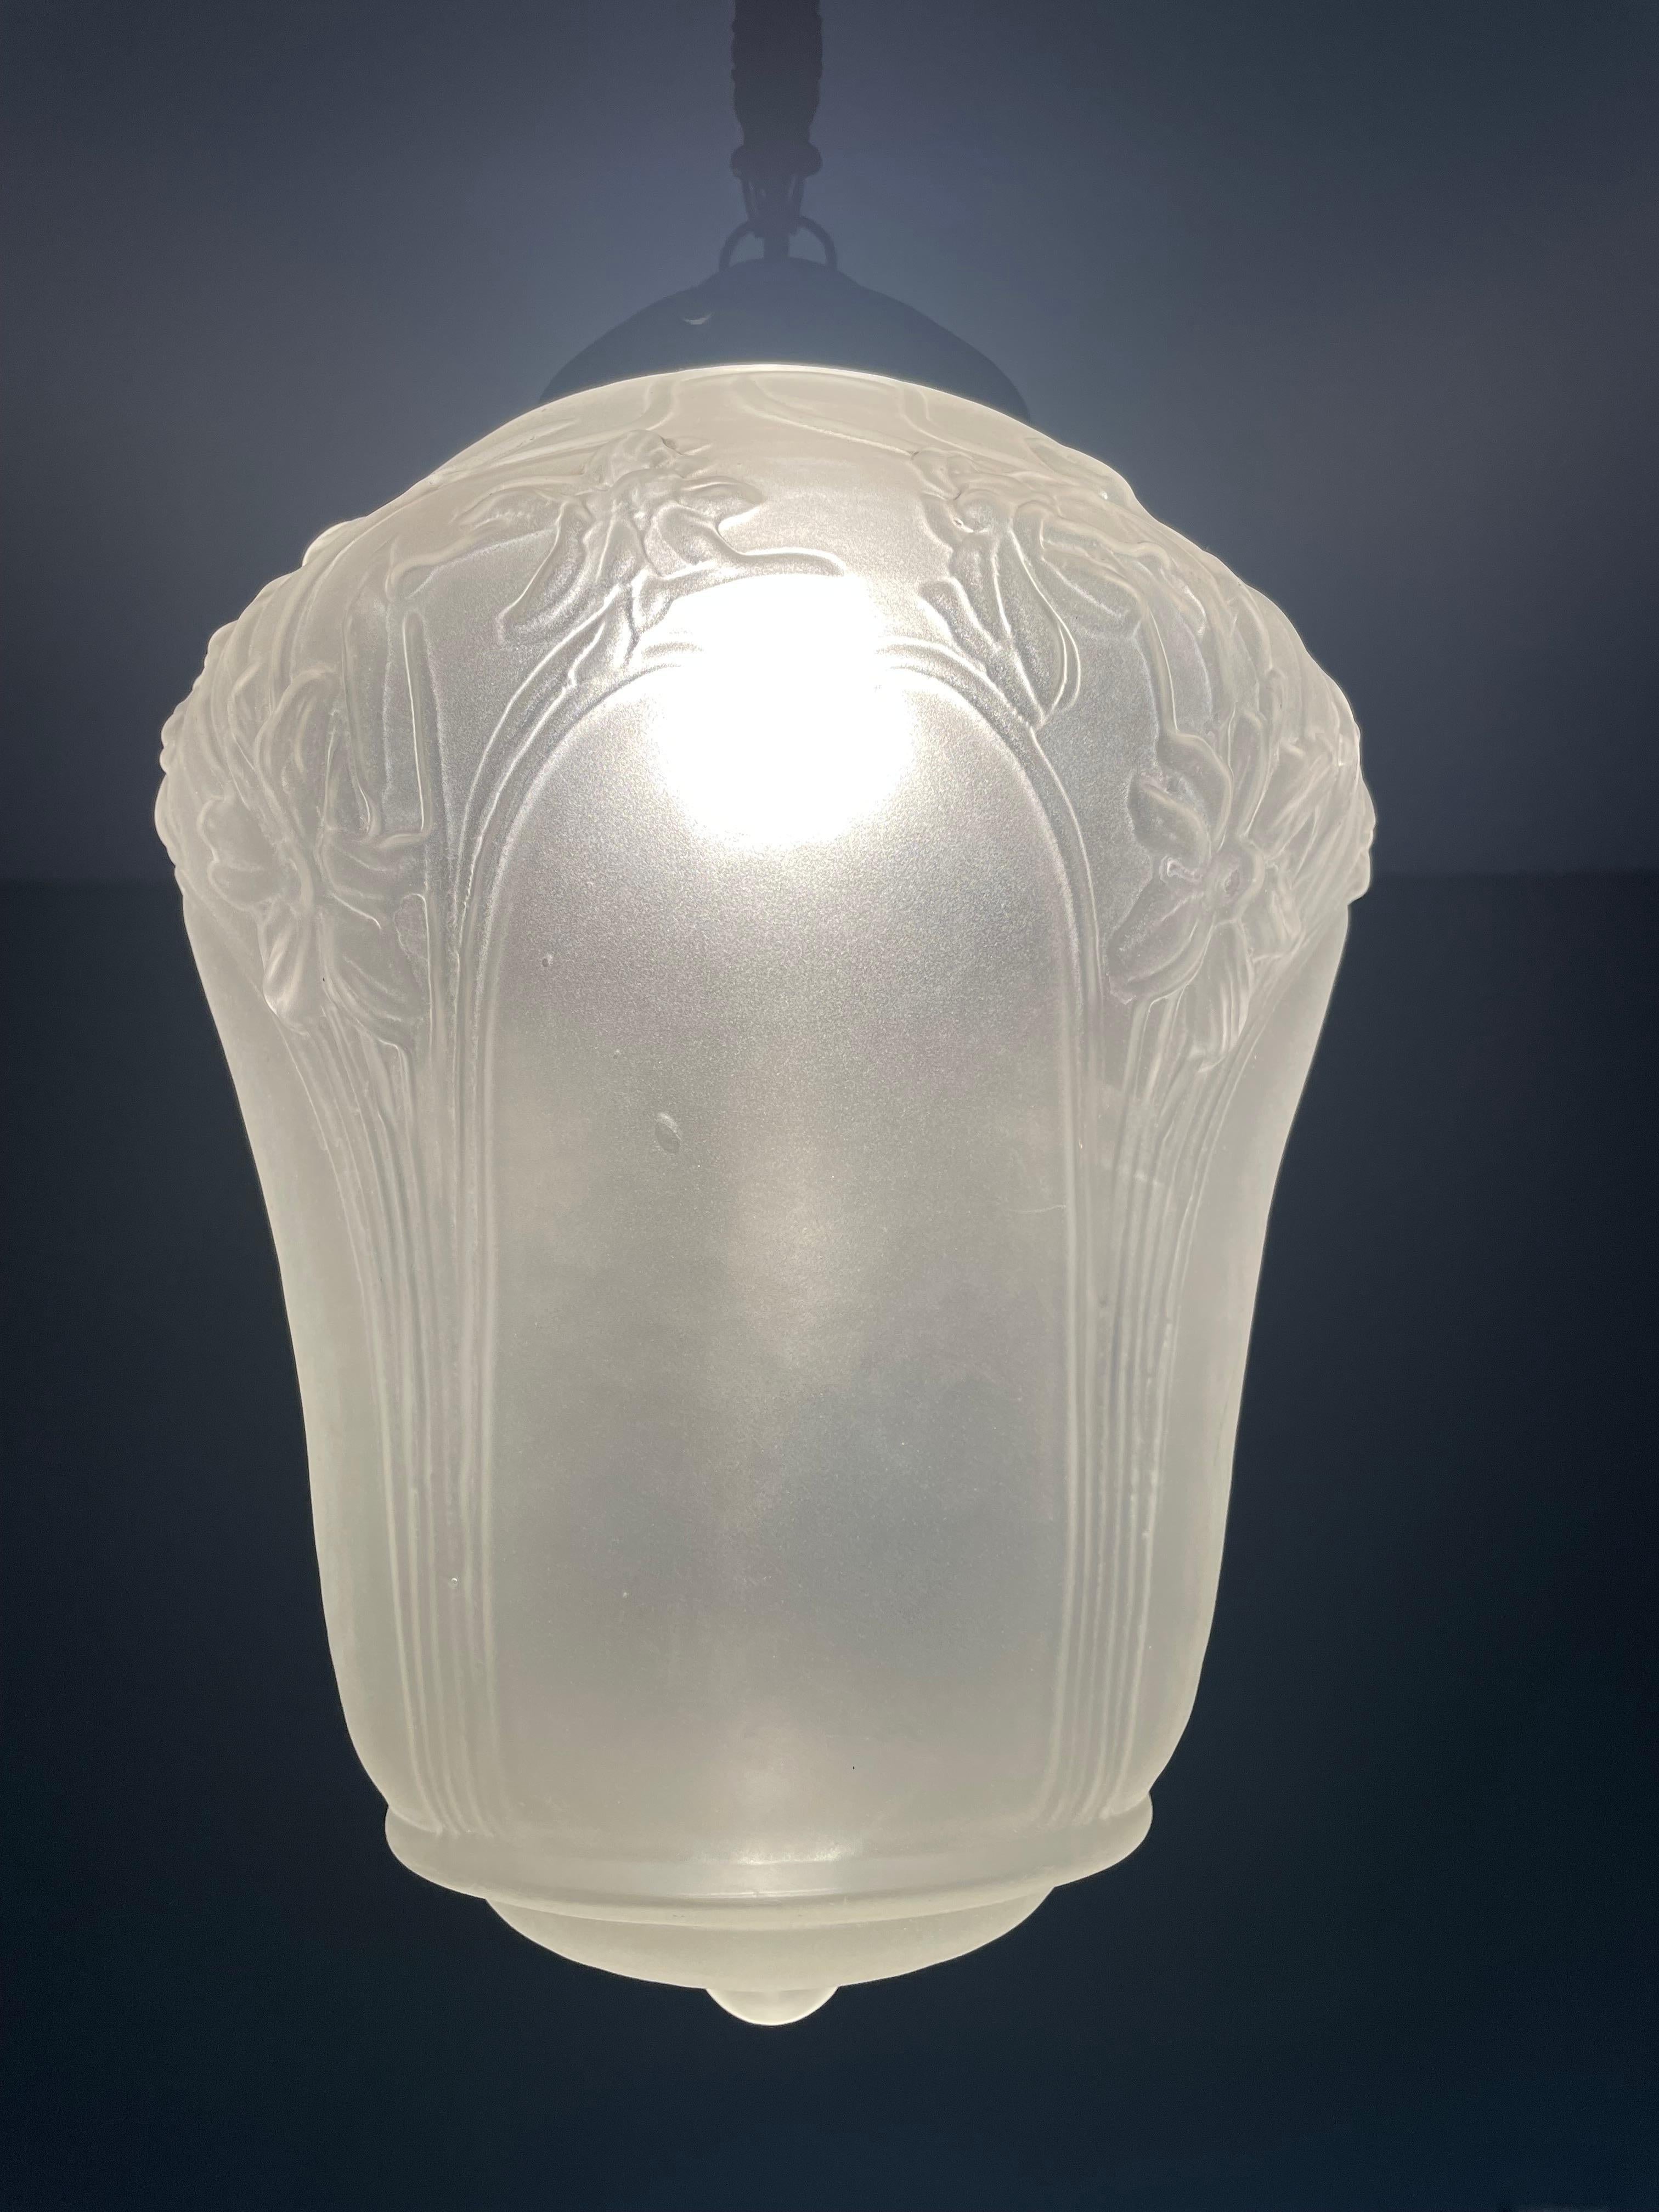 Pendentif en verre et laiton d'origine et esthétiquement parfait.

Les luminaires du début du XXe siècle étant l'une de nos spécialités, nous sommes toujours ravis de trouver des lampes suspendues anciennes que nous n'avons jamais vues auparavant.